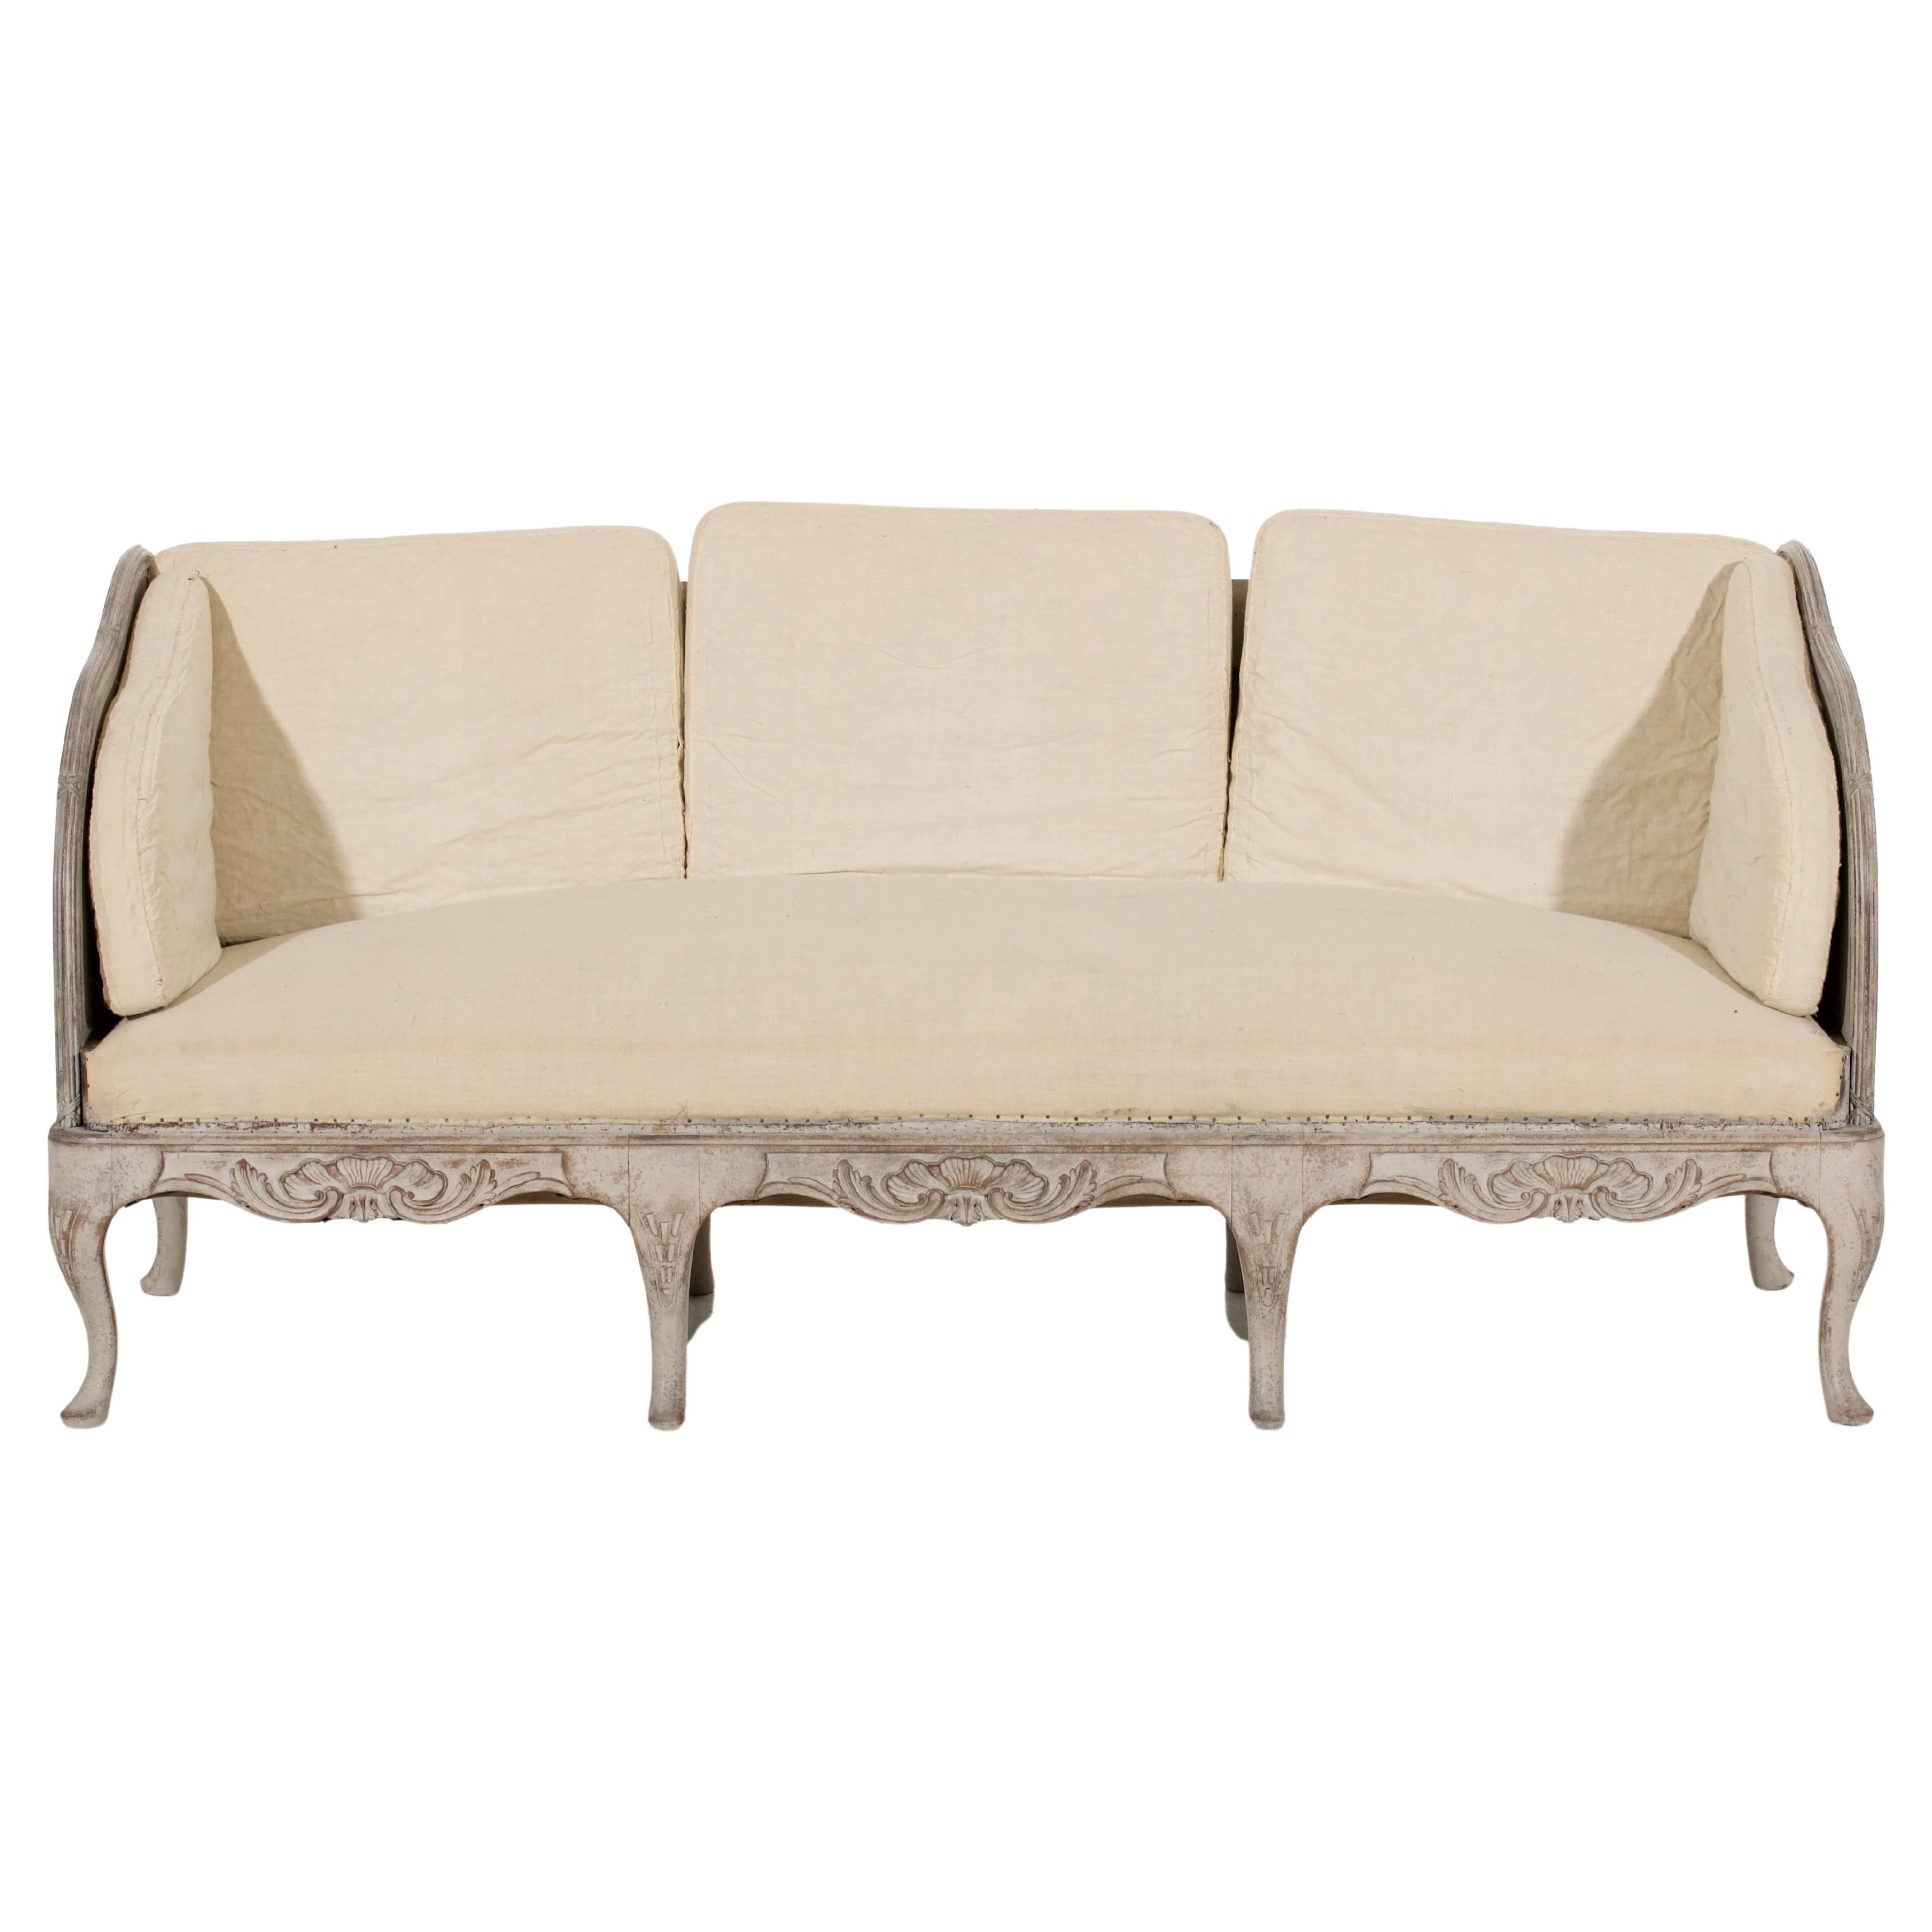 Dieses Sofa ist im schwedischen Rokokostil gehalten und soll etwa 100 Jahre alt sein